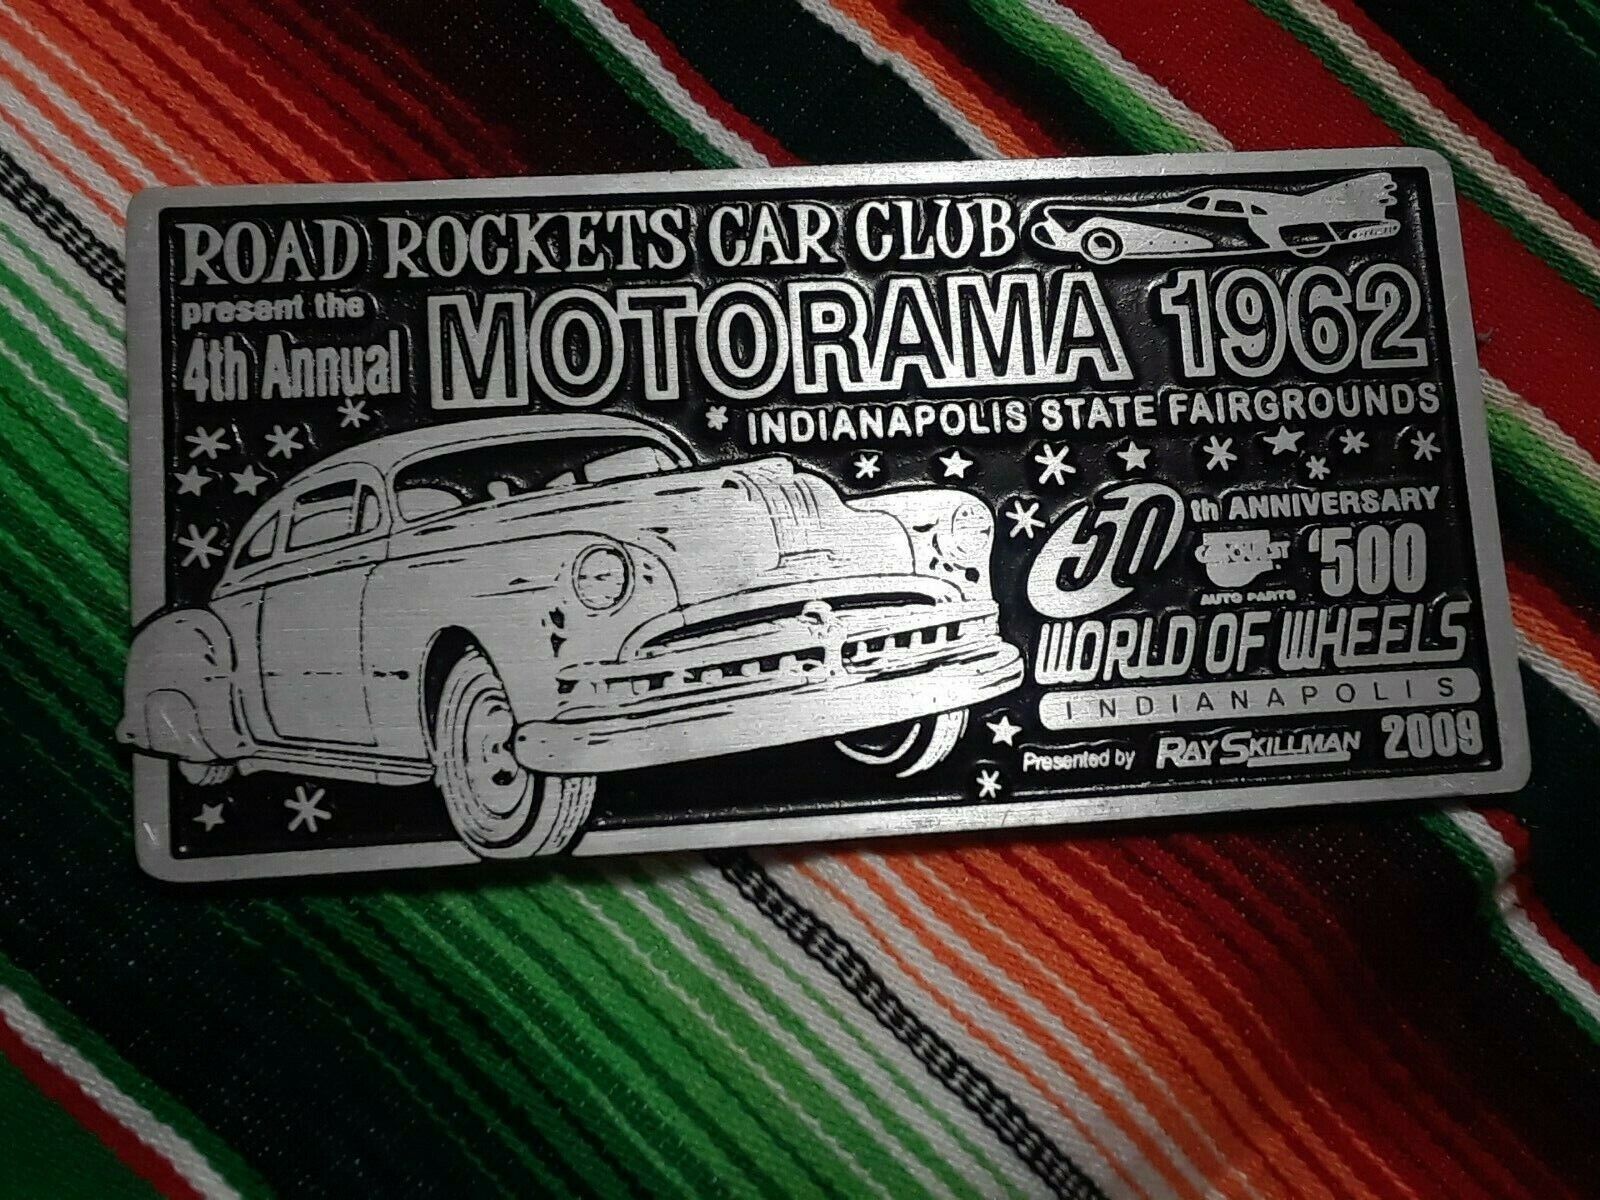 ROAD ROCKETS 1962 MOTORAMA 50TH ANNIVERSARY CAR CLUB PLAQUE INDIANAPOLIS 2009